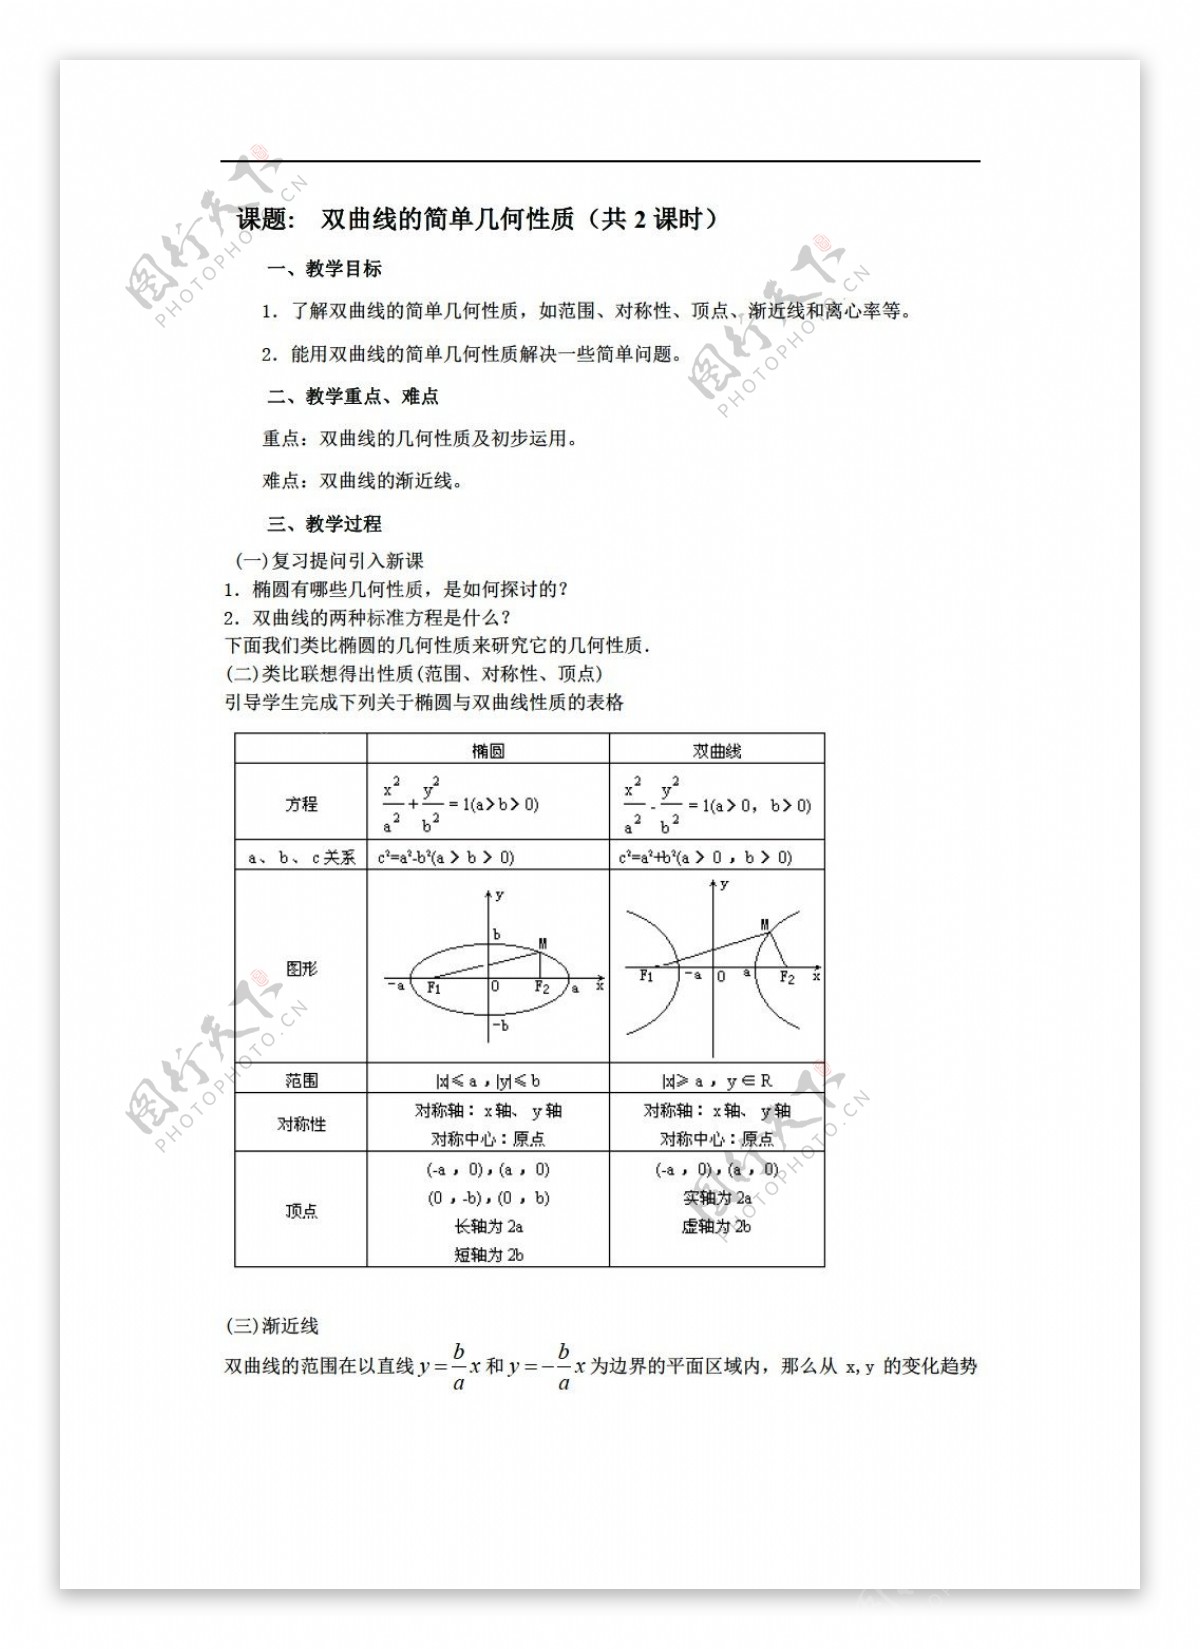 数学苏教版选修11如东马塘中学圆锥曲线全章教案